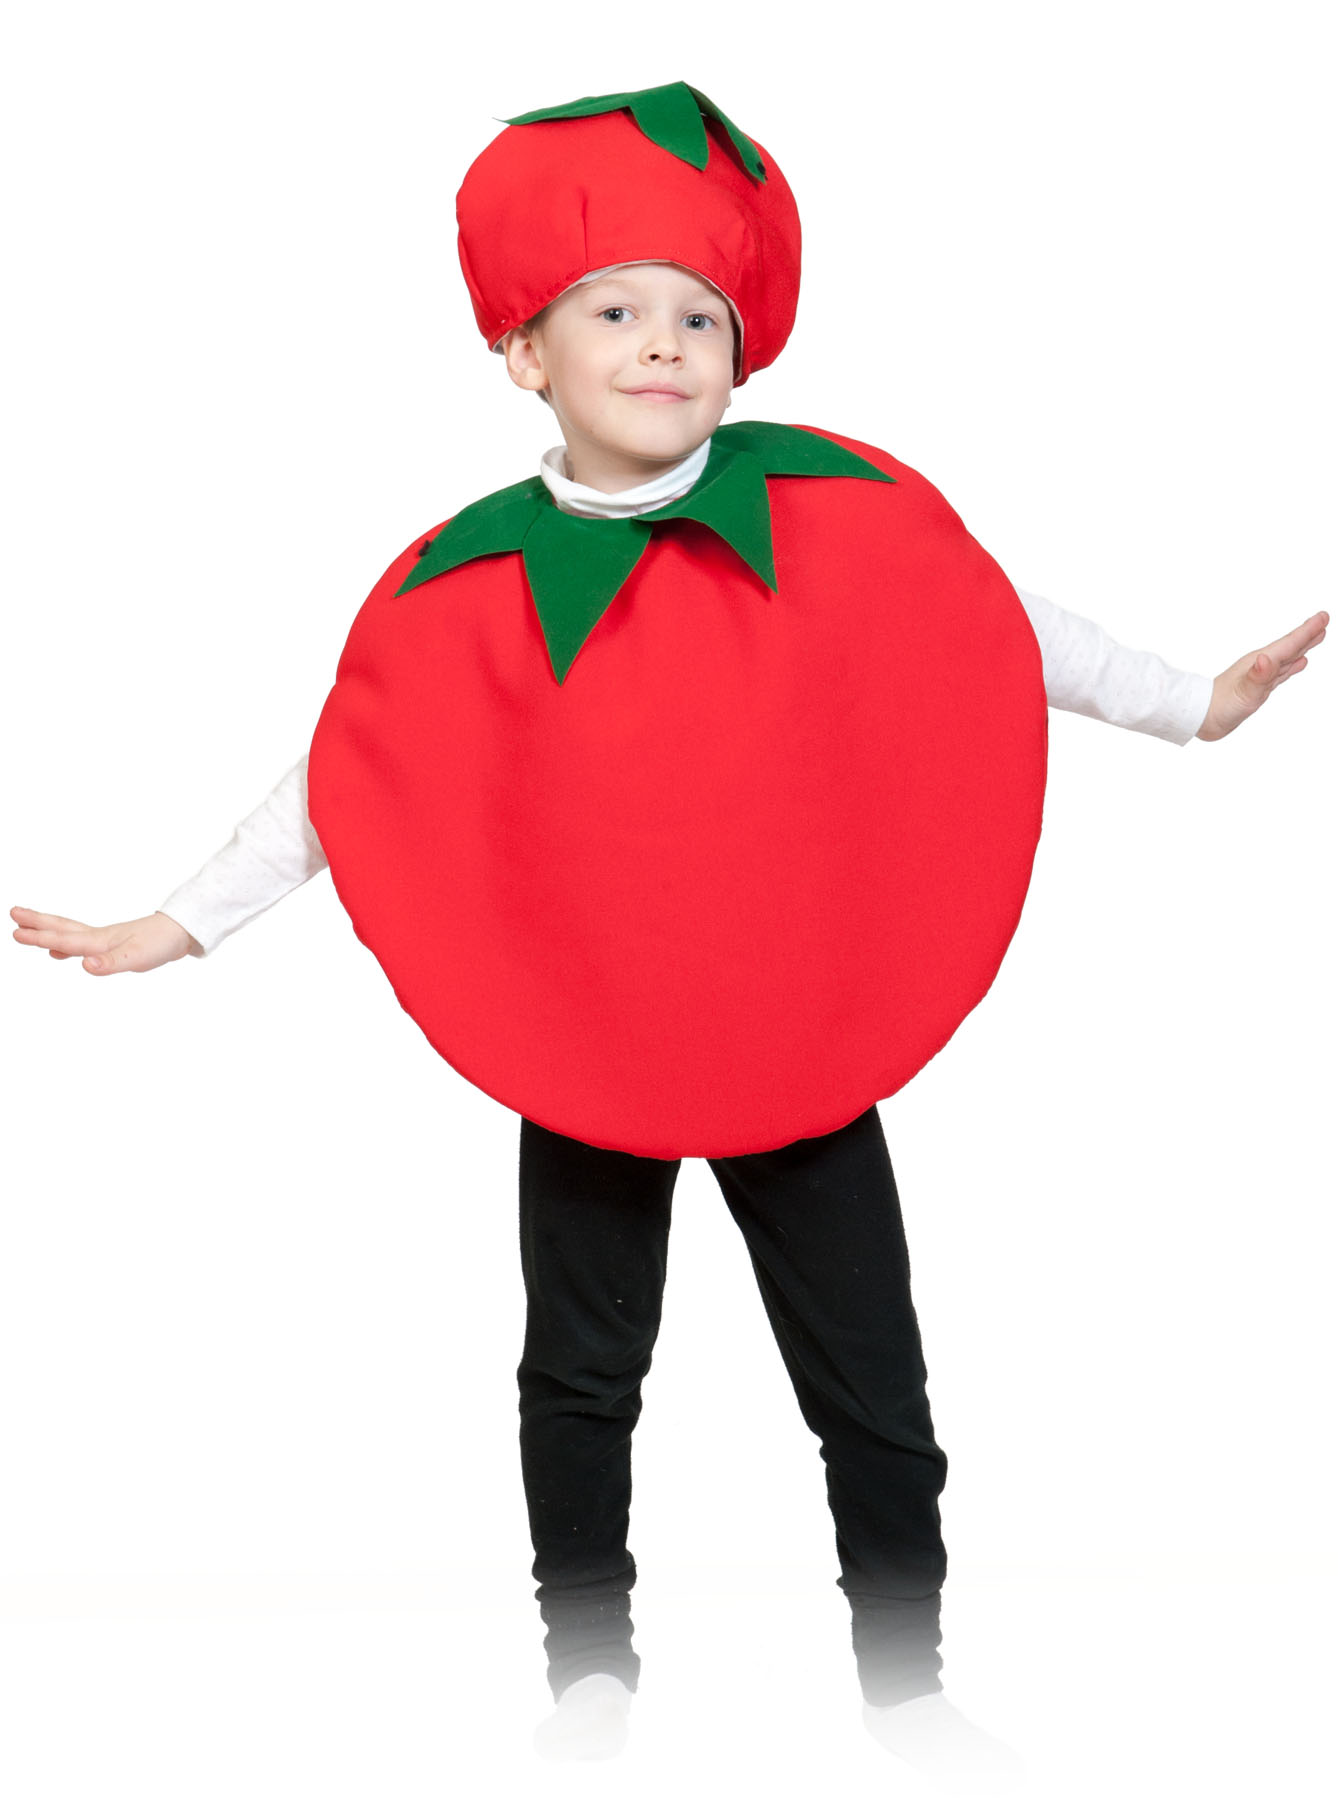 Костюм овоща. Костюм помидора для мальчика. Костюмы овощей и фруктов для детей. Костюм помидора для девочки. Ребенок в костюме помидора.